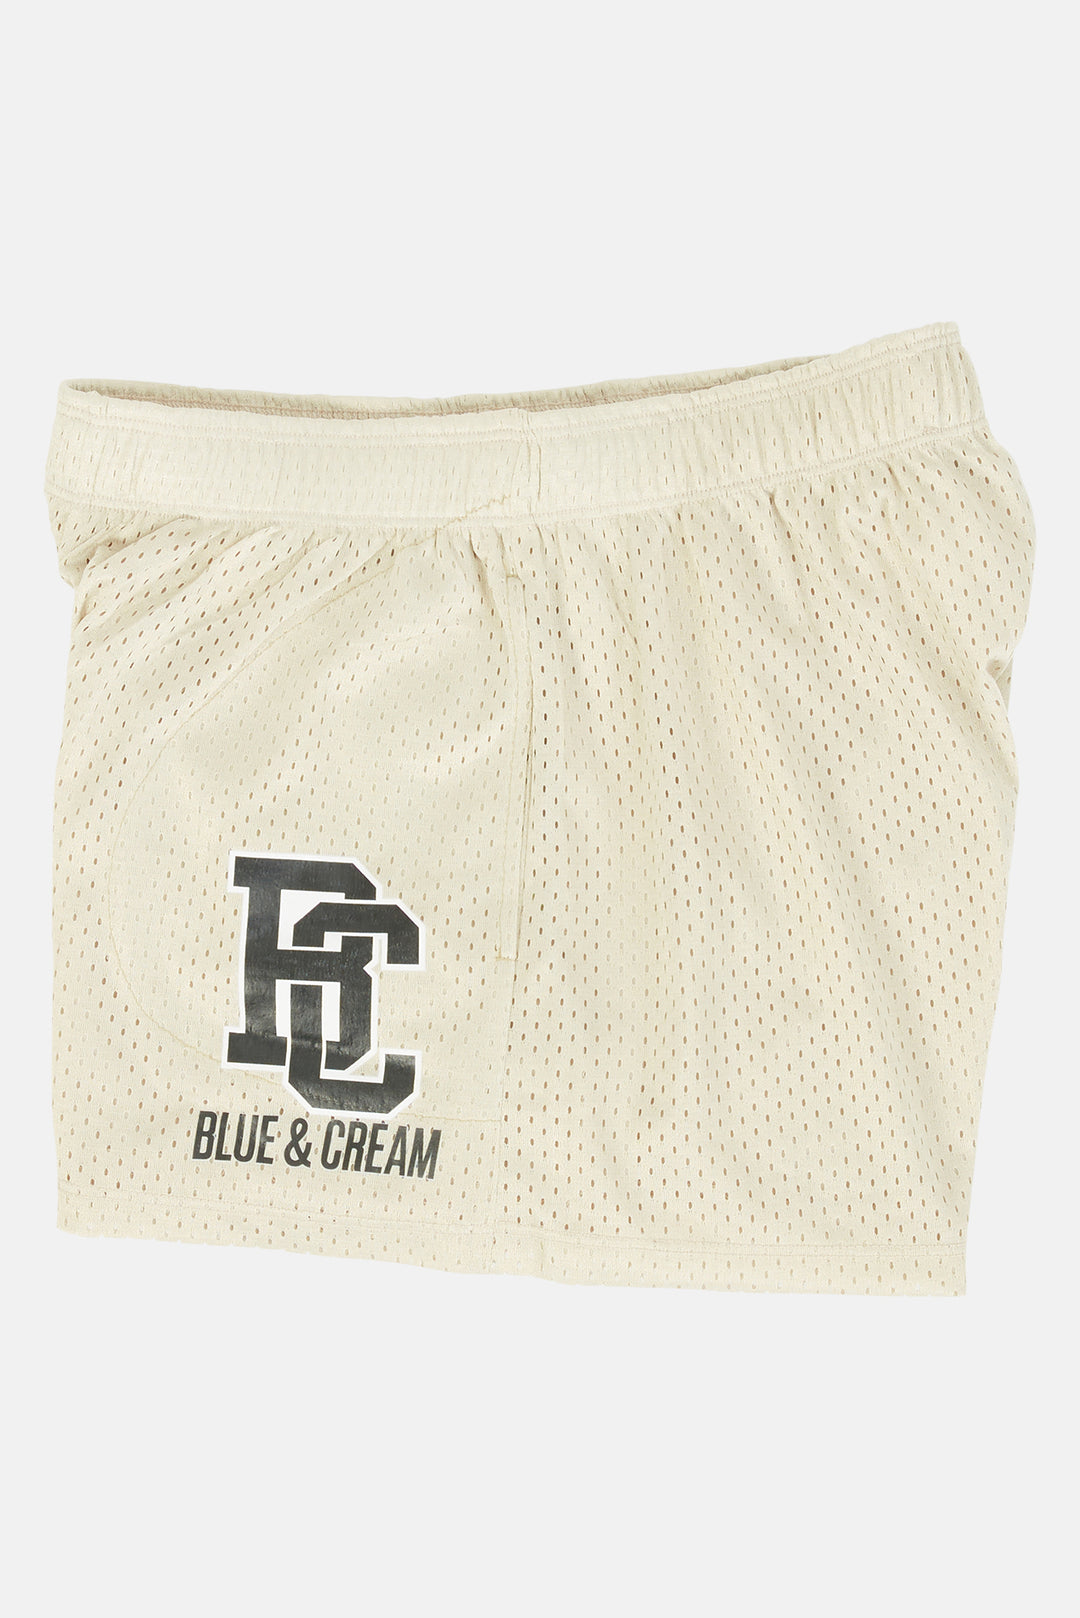 NY Mesh Shorts Taupe / Black - blueandcream